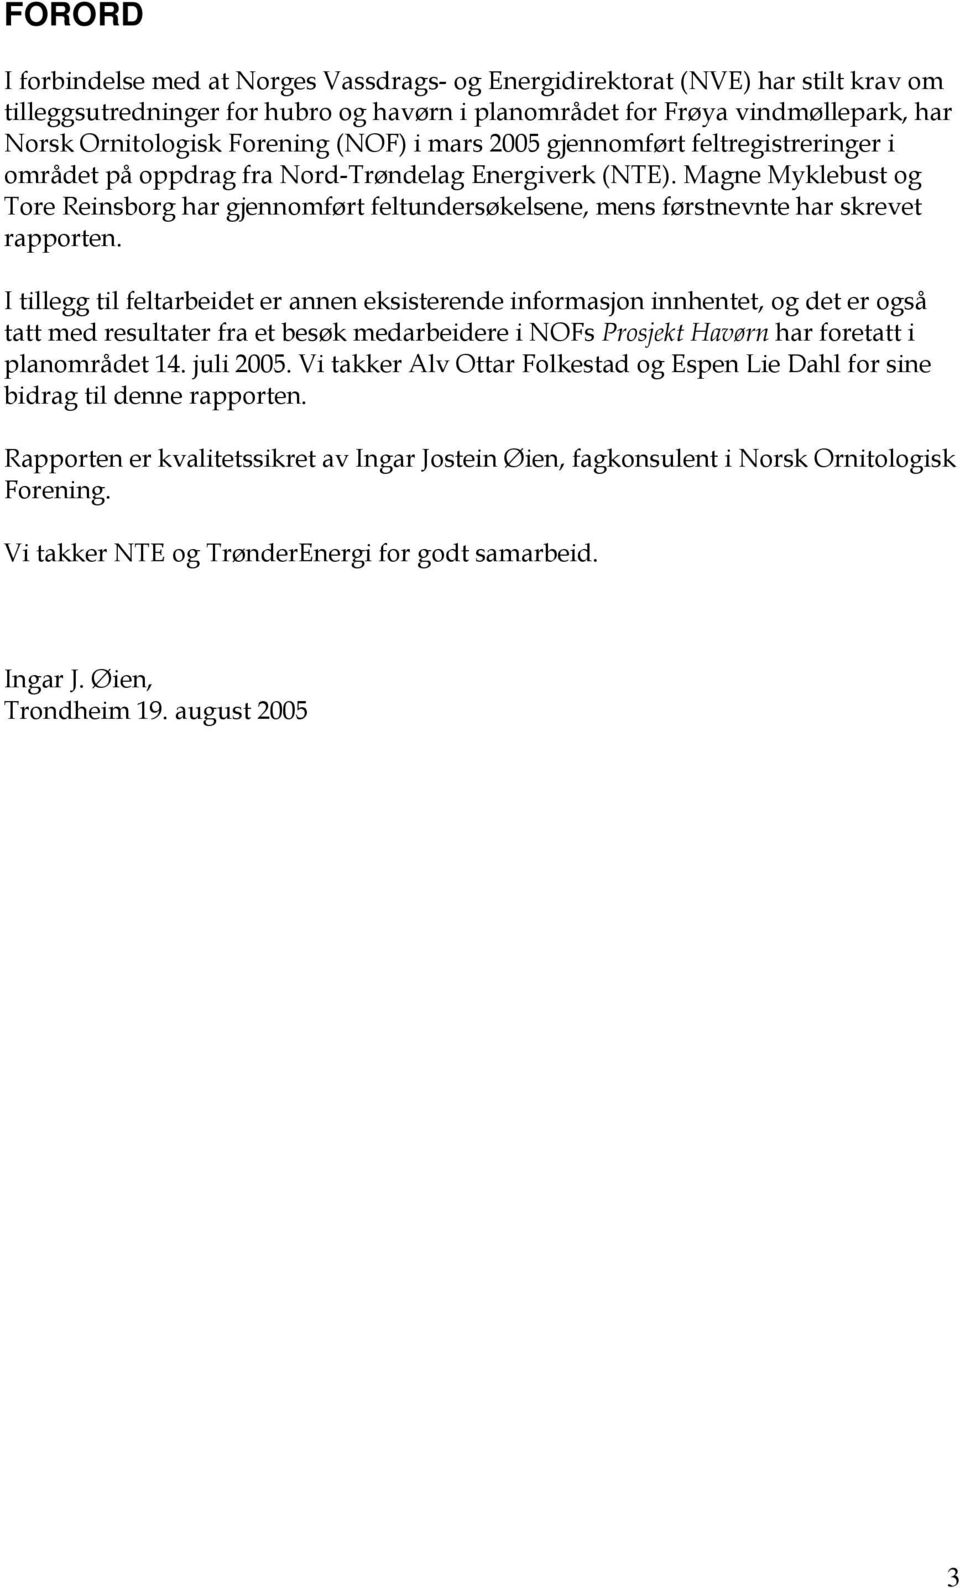 Magne Myklebust og Tore Reinsborg har gjennomført feltundersøkelsene, mens førstnevnte har skrevet rapporten.